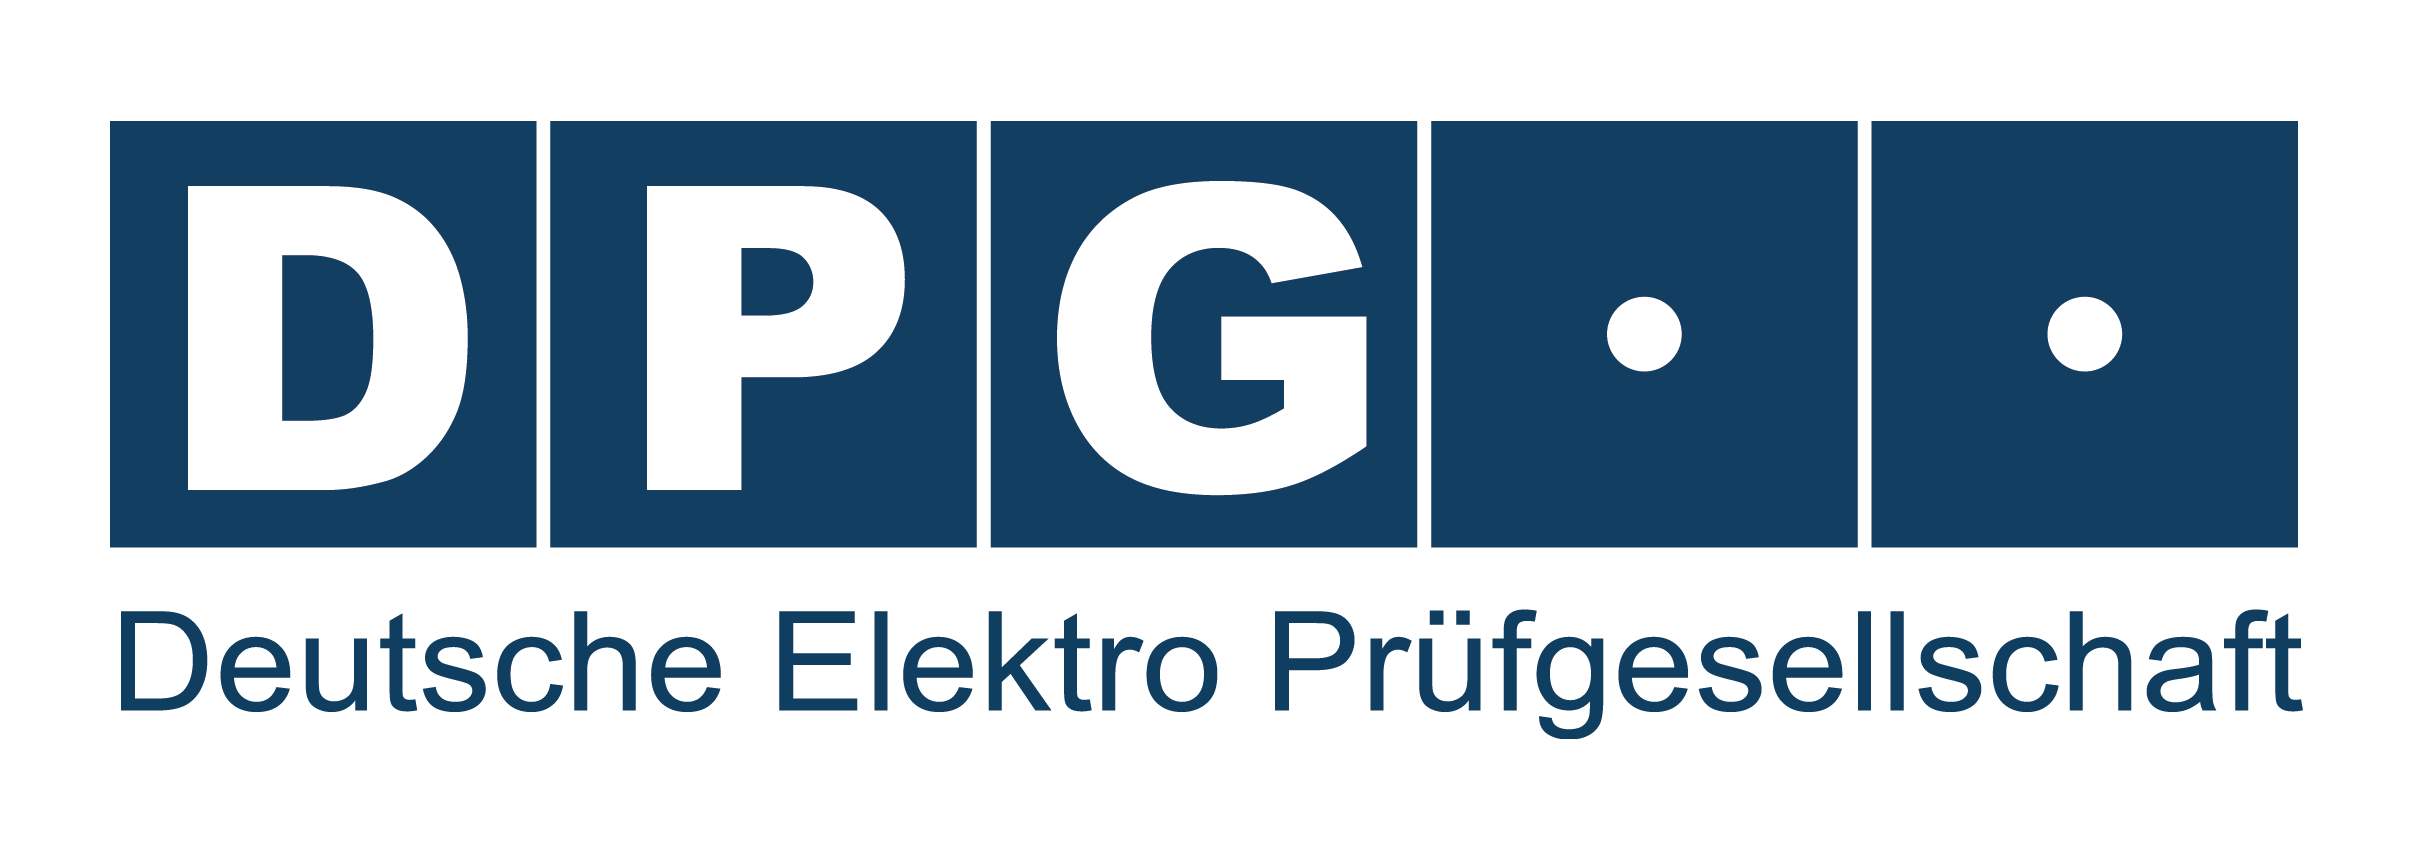 DPG Logo - DPG Deutsche Elektro Prüfgesellschaft. Qualität ist nicht verhandelbar